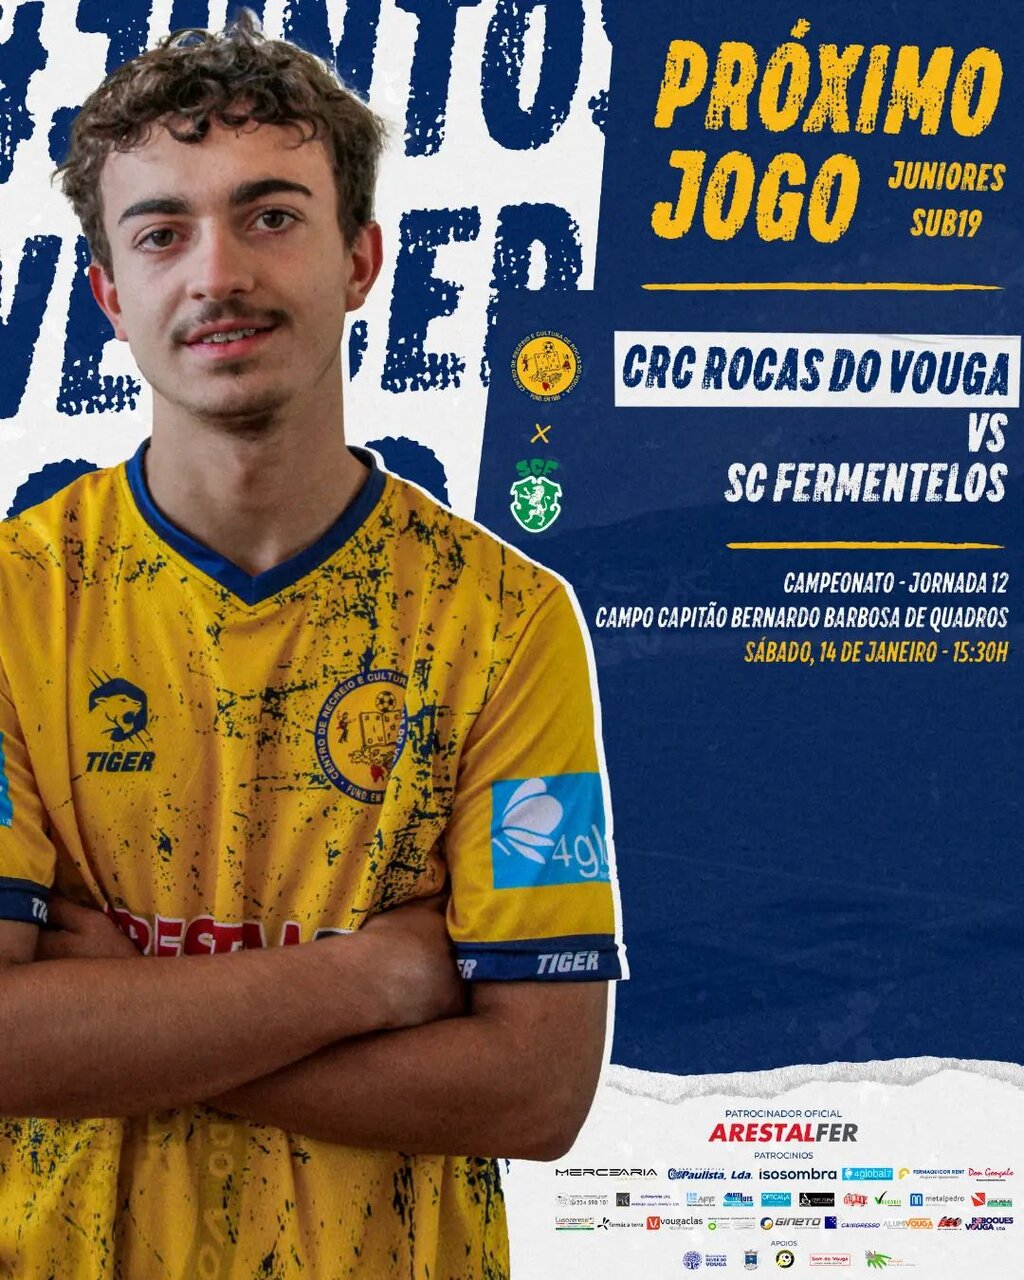 14 jan - CRC Rocas - Juniores - jogo em casa